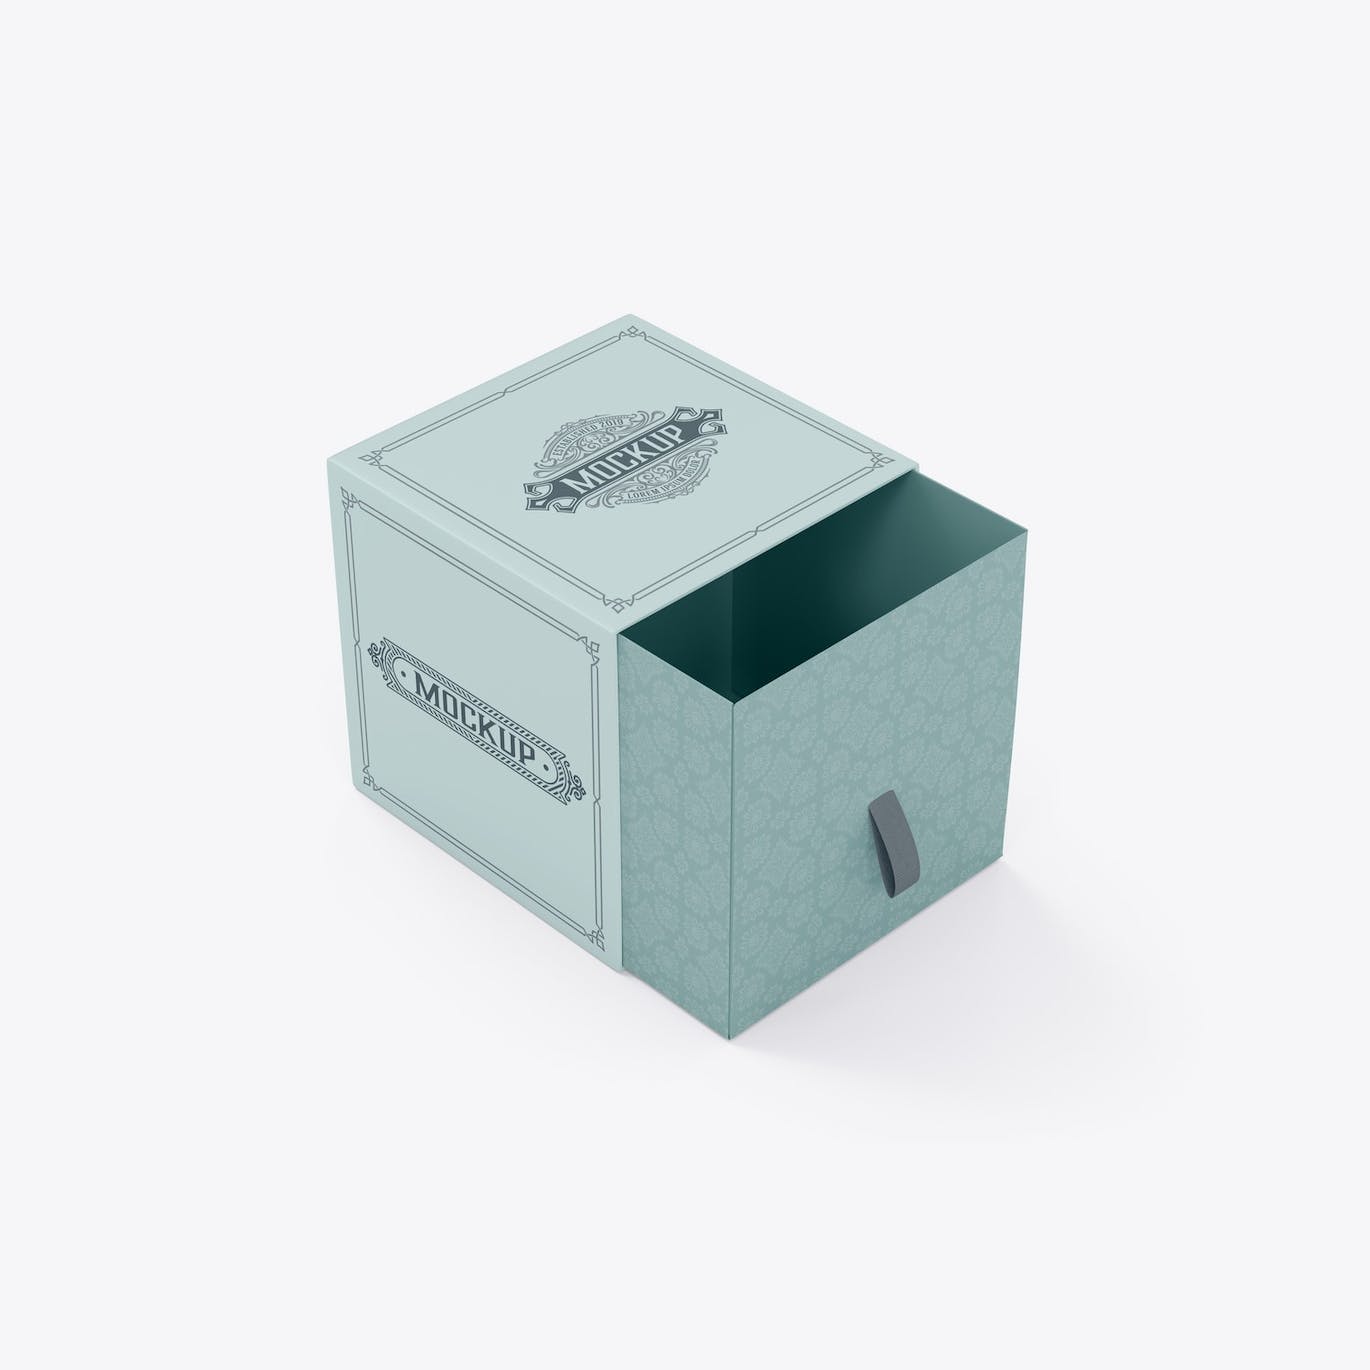 抽屉礼品盒子设计样机 Slide Box Mockup 样机素材 第2张